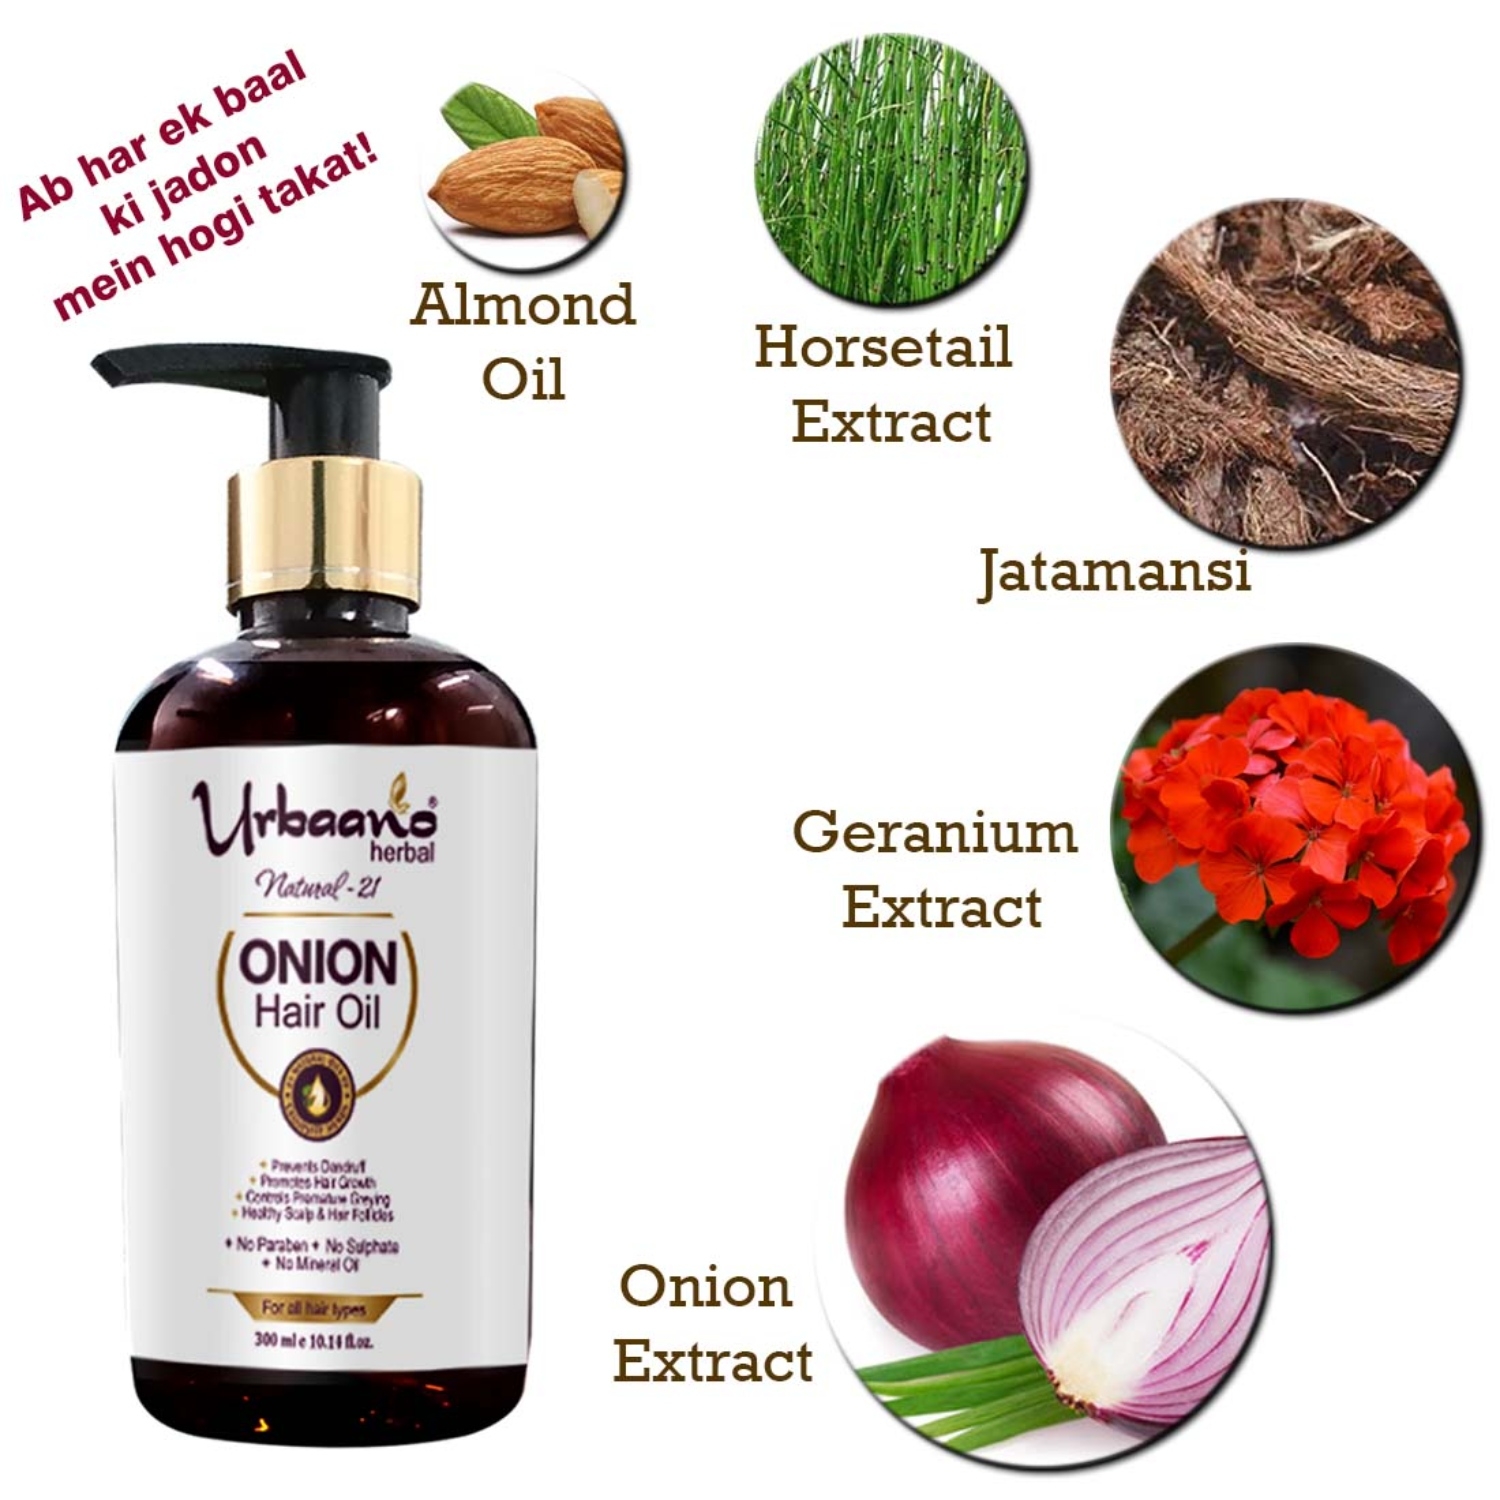 Urbaano Herbal Onion Hair Oil and Fermented RiceWater Shampoo Hair Care Kit  for Long Hair -600ml